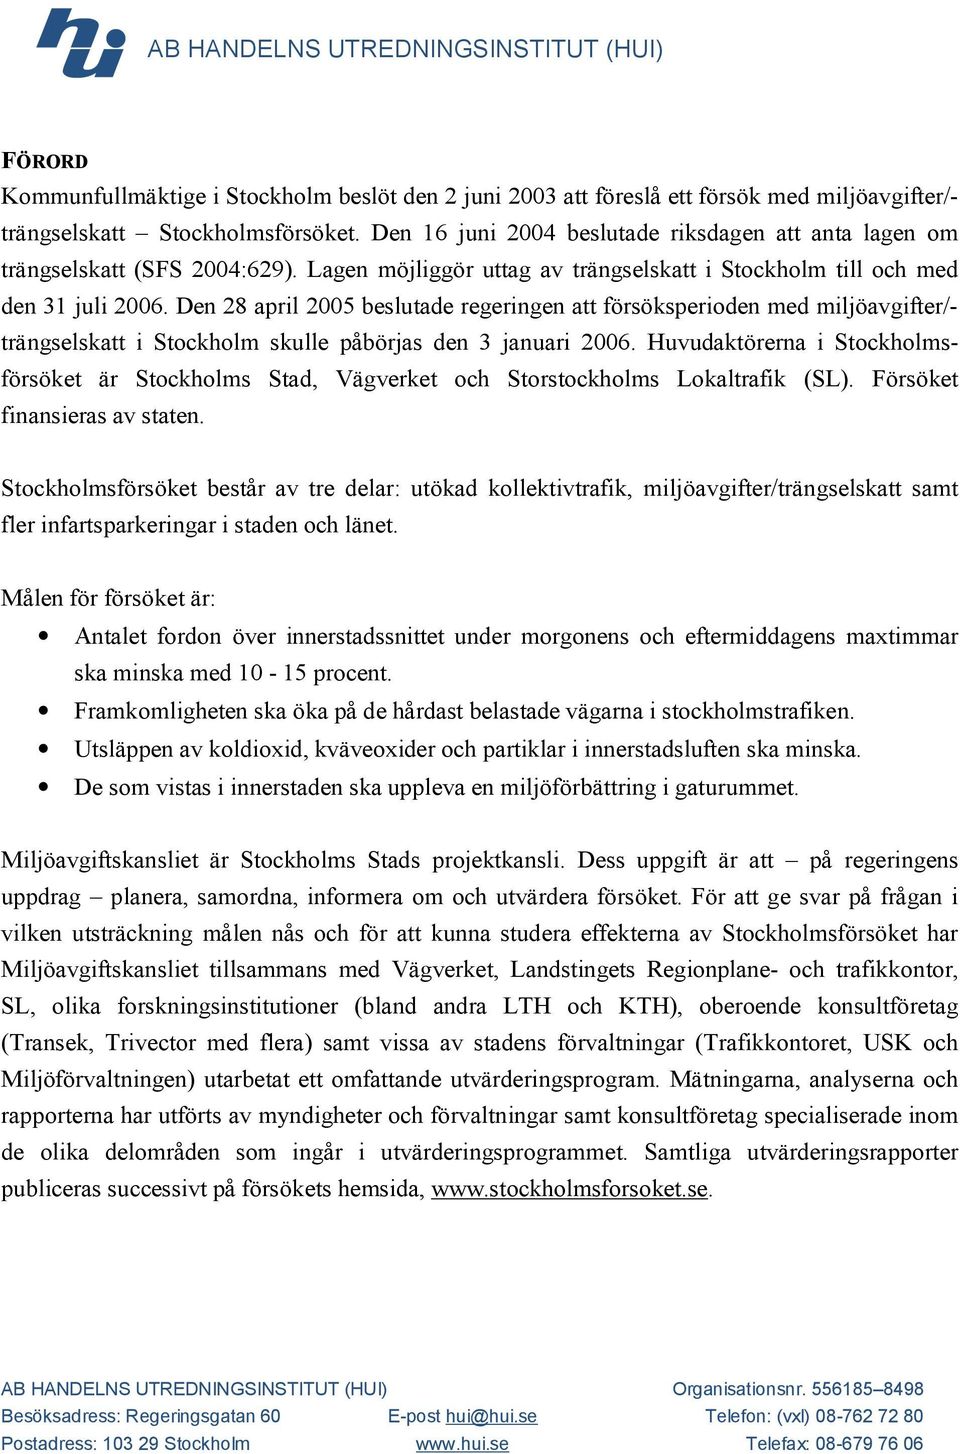 Den 28 april 2005 beslutade regeringen att försöksperioden med miljöavgifter/- trängselskatt i Stockholm skulle påbörjas den 3 januari 2006.